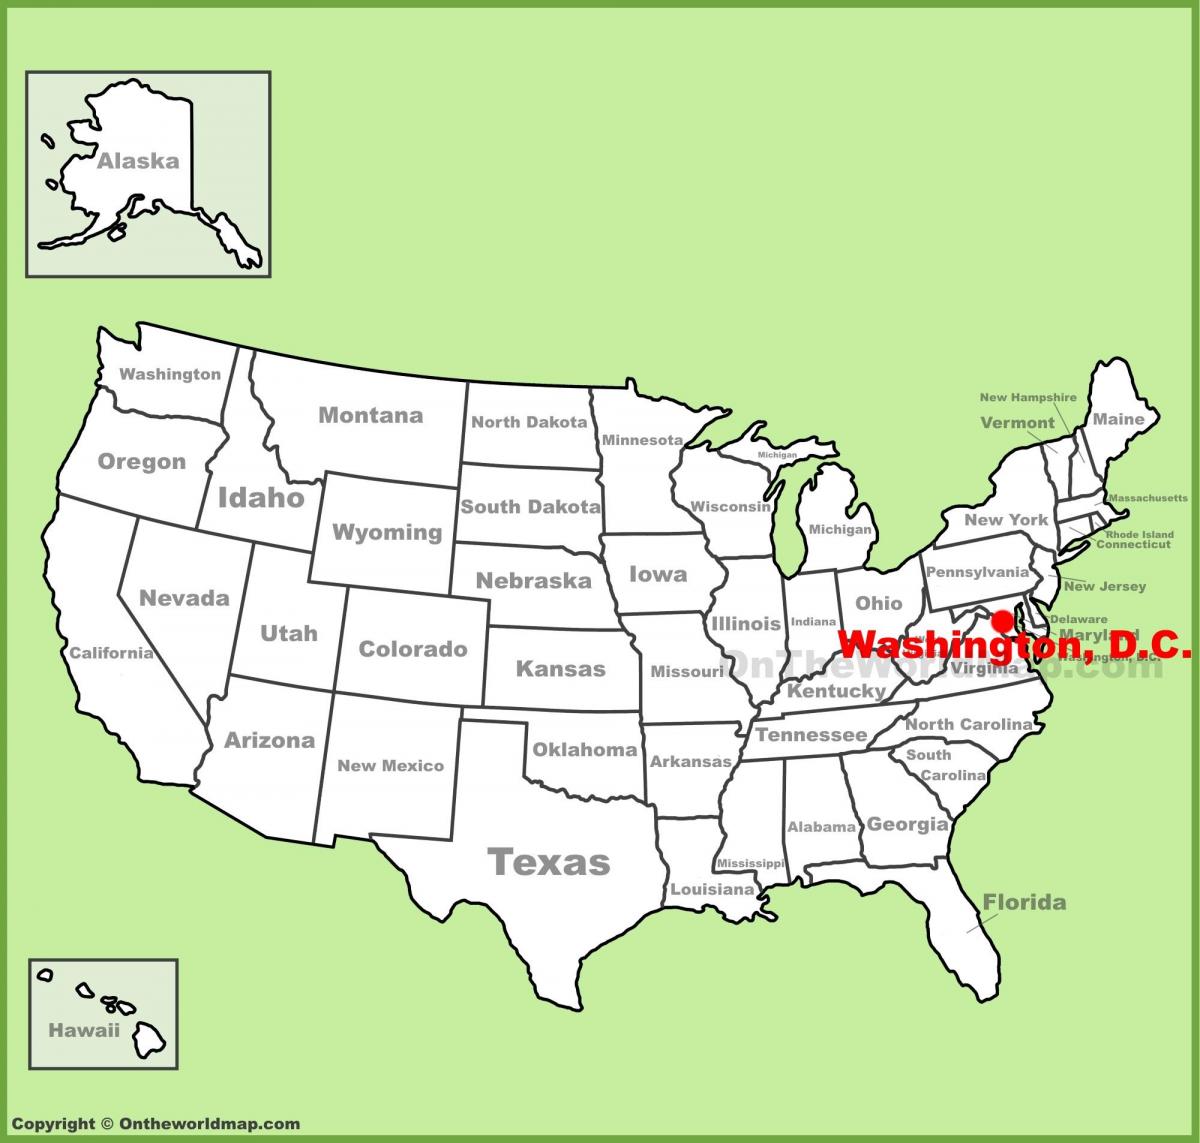 华盛顿在地图上的位置